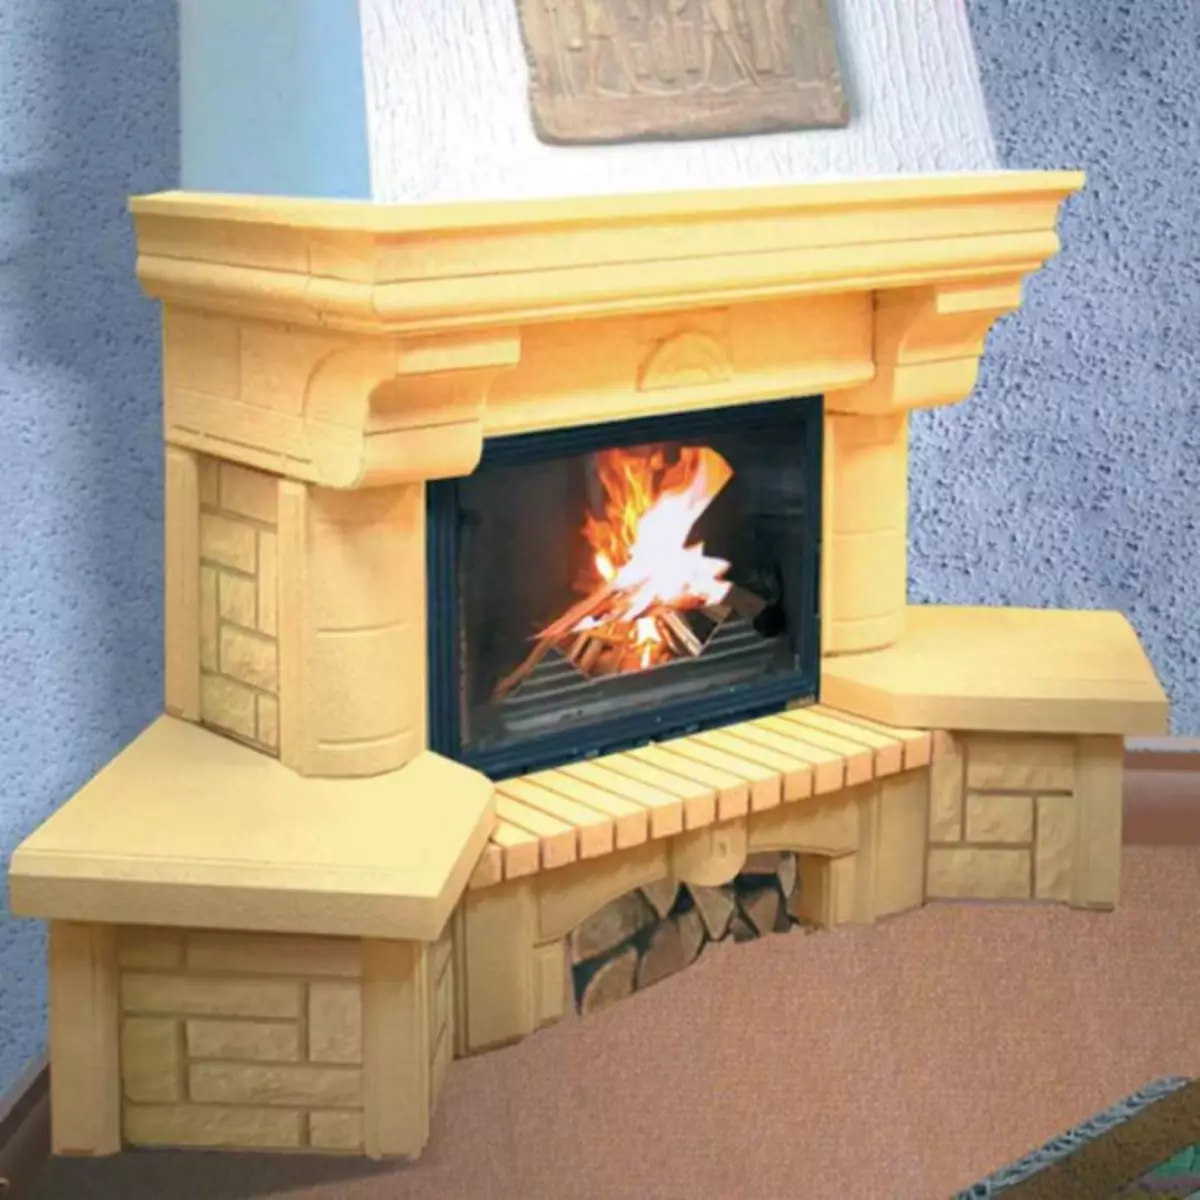 Peinture résistante à la chaleur: choisissez un revêtement de protection et esthétique pour la cheminée et le four